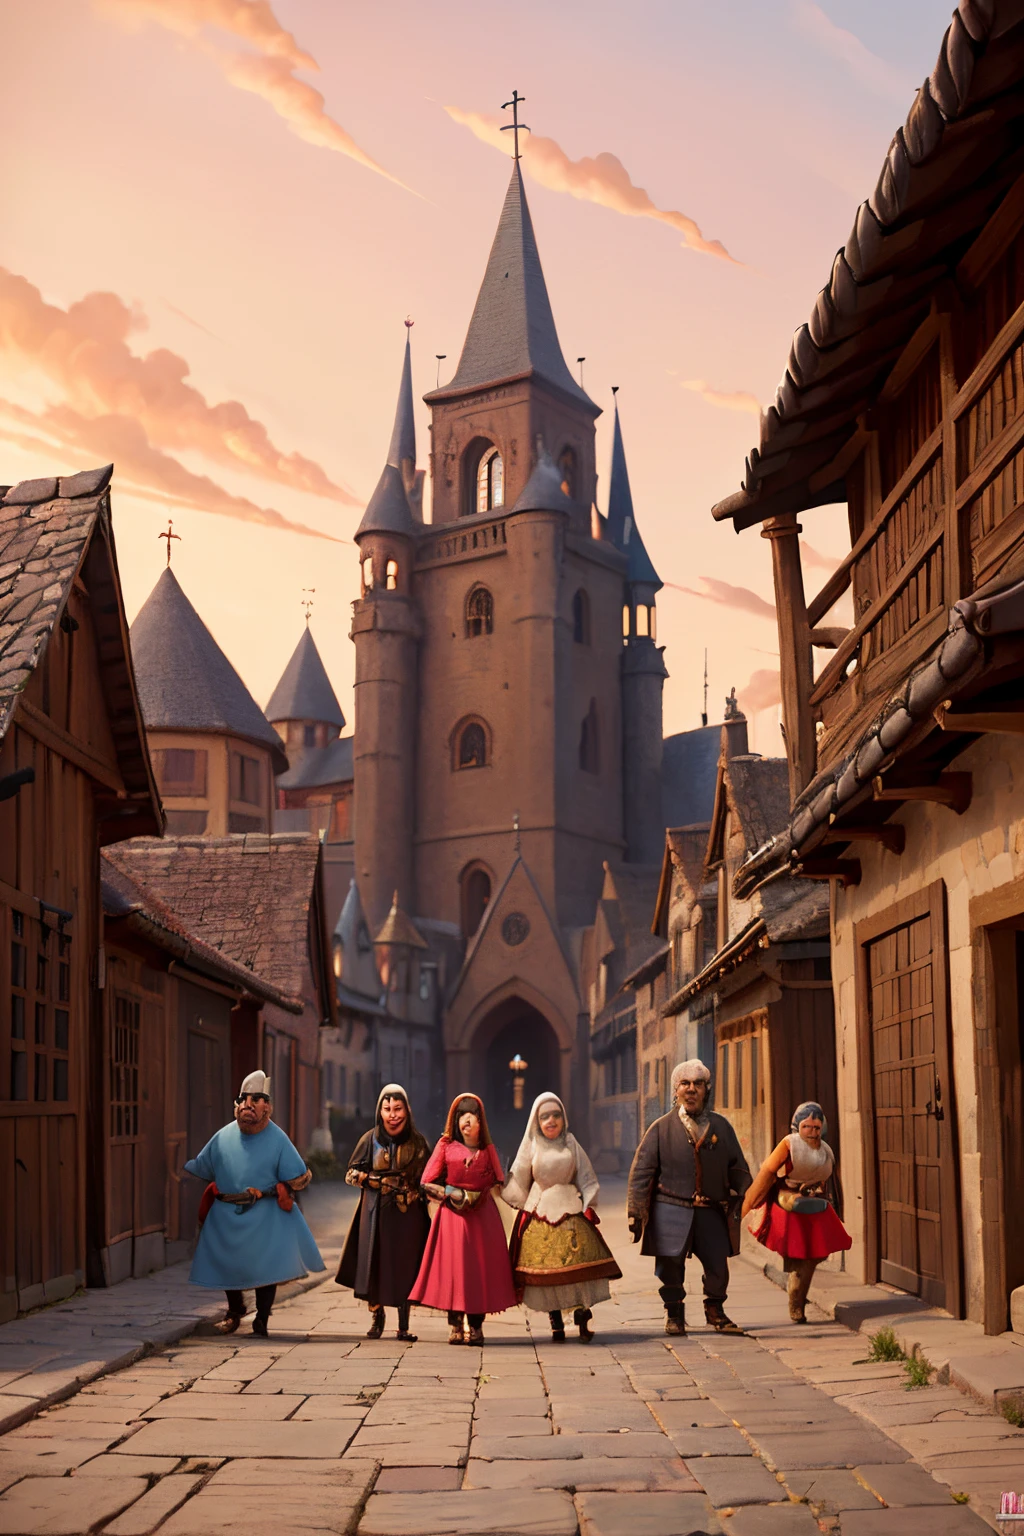 Alguns seres fantásticos e sombrios ,andando por uma grande rua, em uma rua medieval com casas ao redor, muitas pessoas com roupas medievais andando pela rua. Estilo Pixar